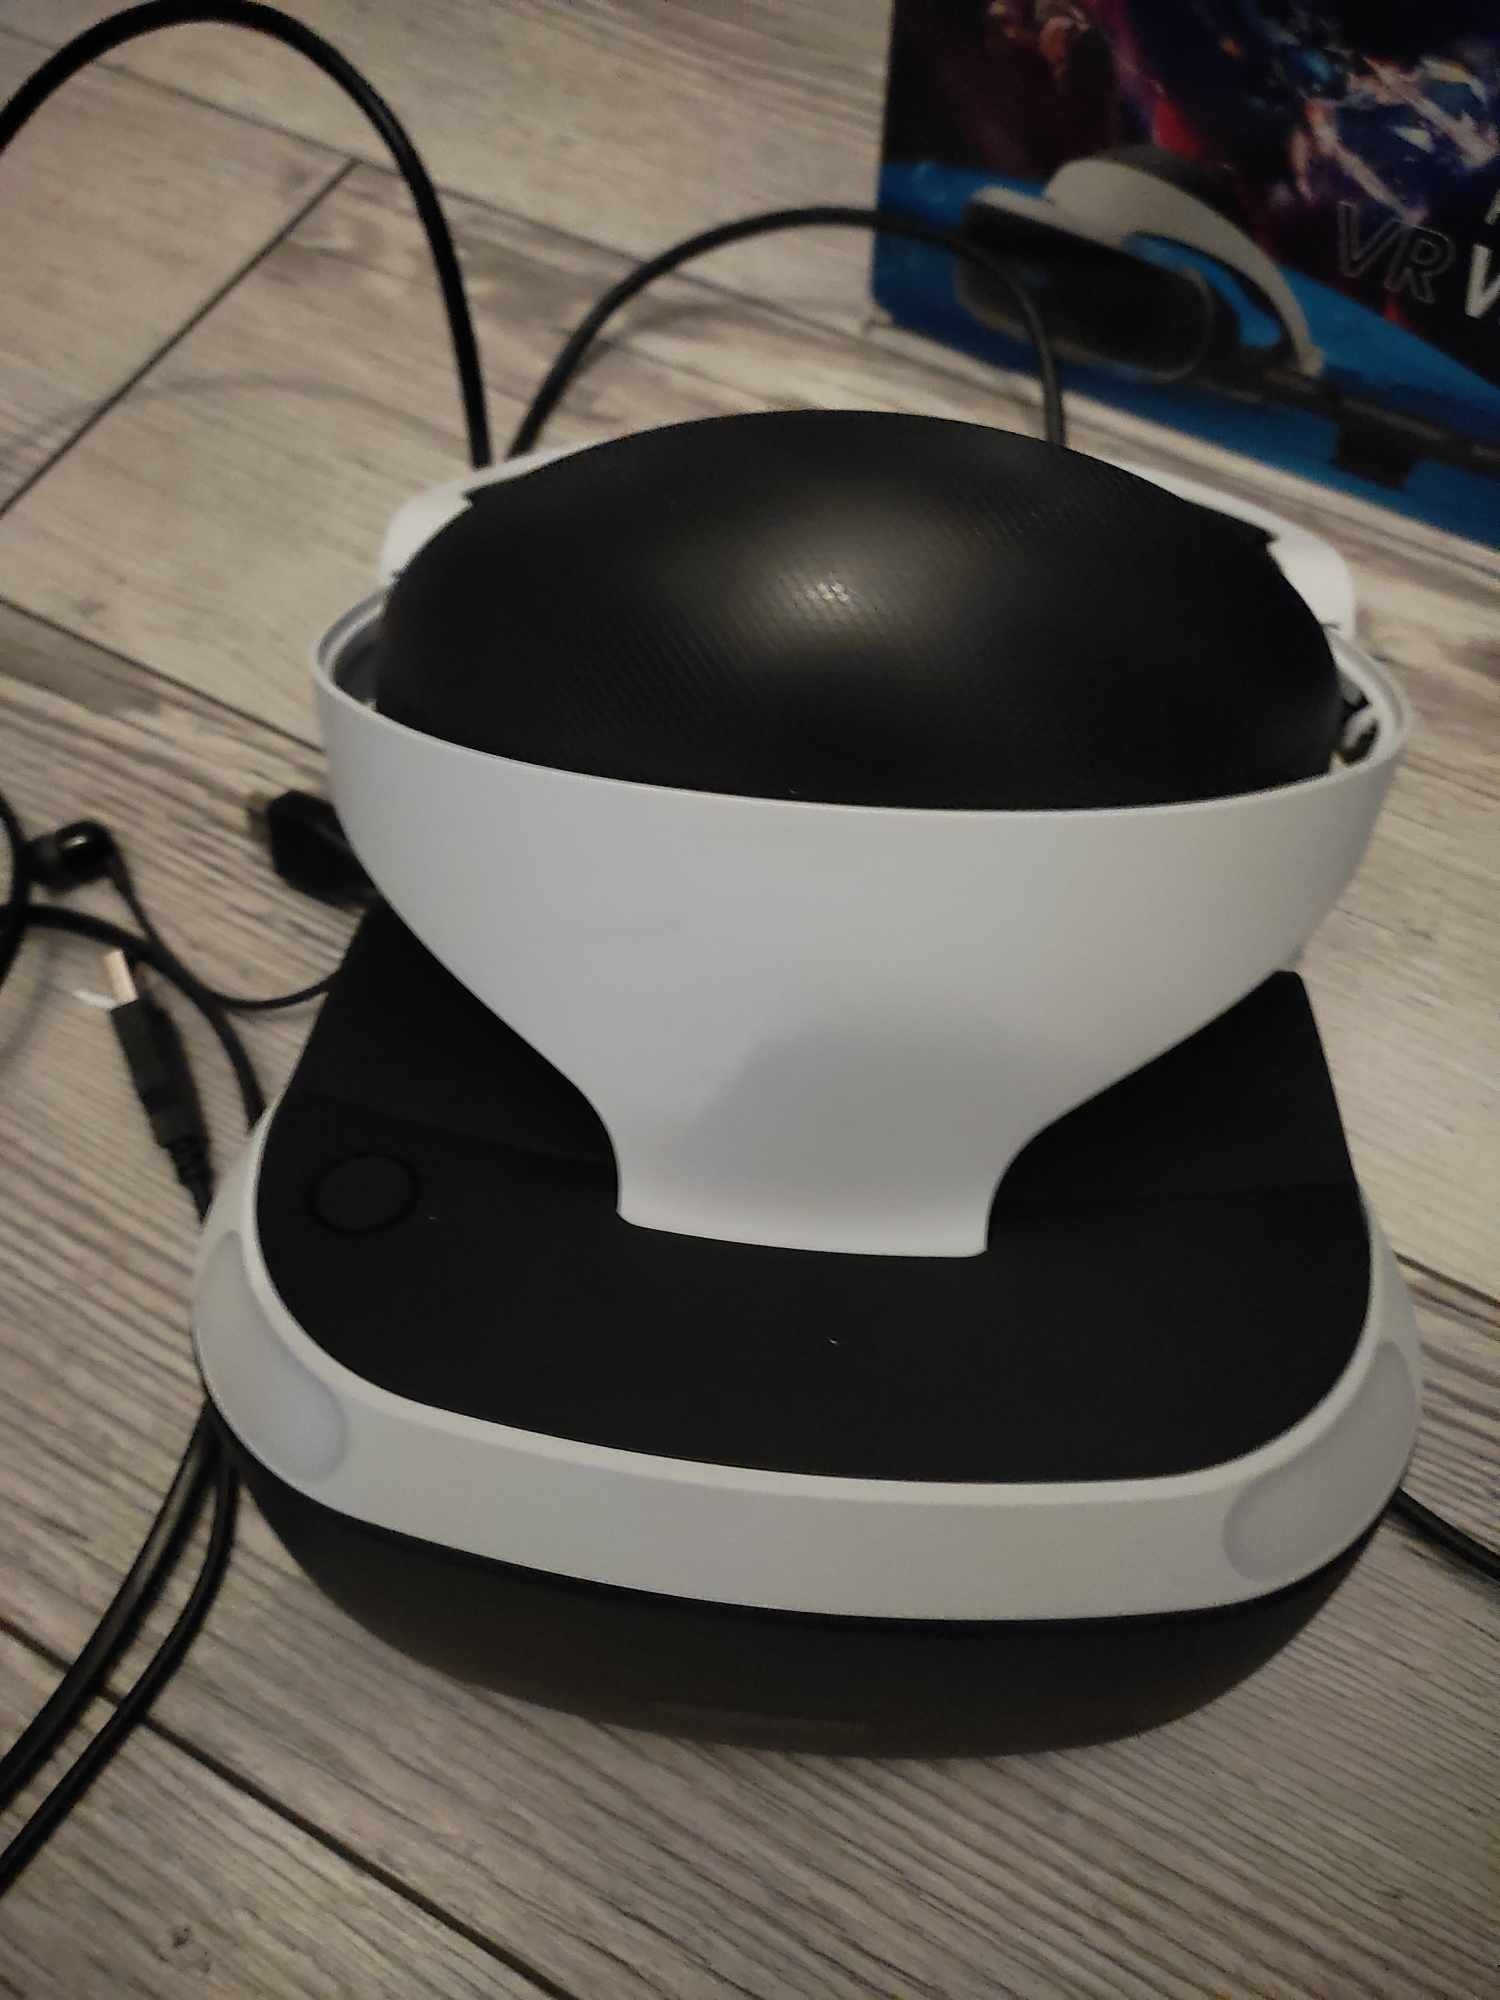 Gogle VR - jak nowe